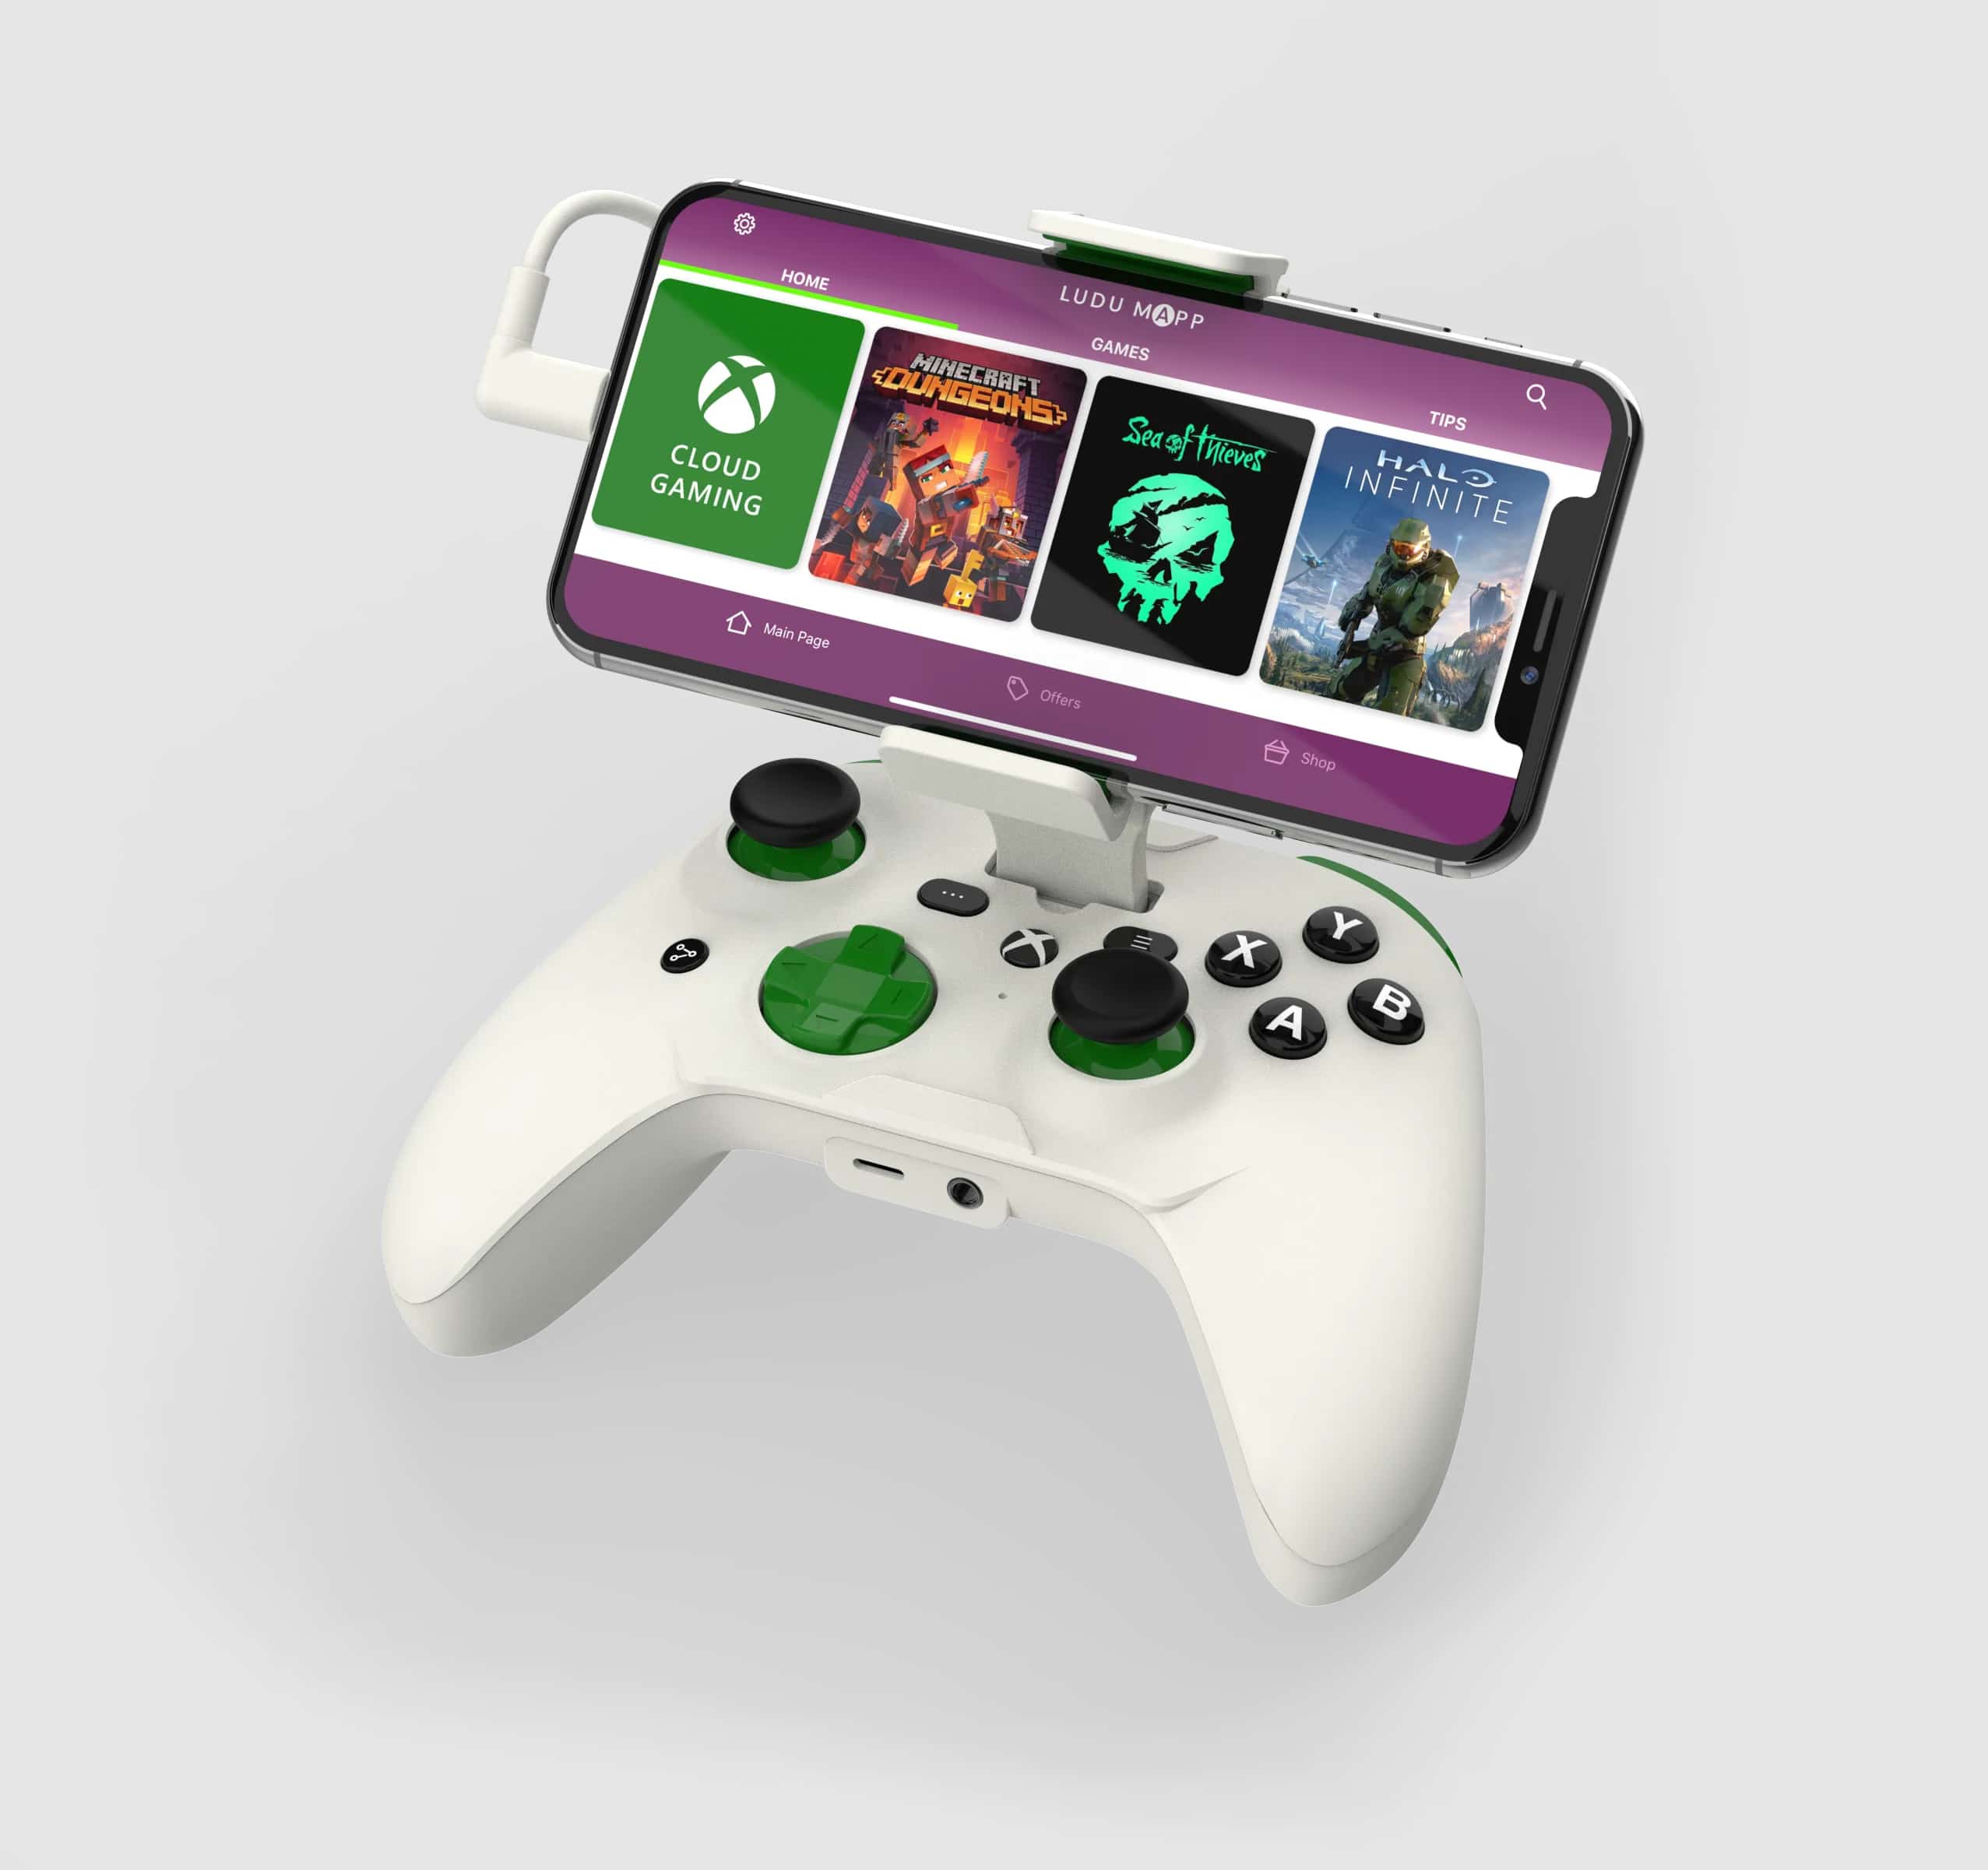 Update: Game Pass Ultimate recebe suporte para touch em TODOS os jogos -  Jogos de celular 